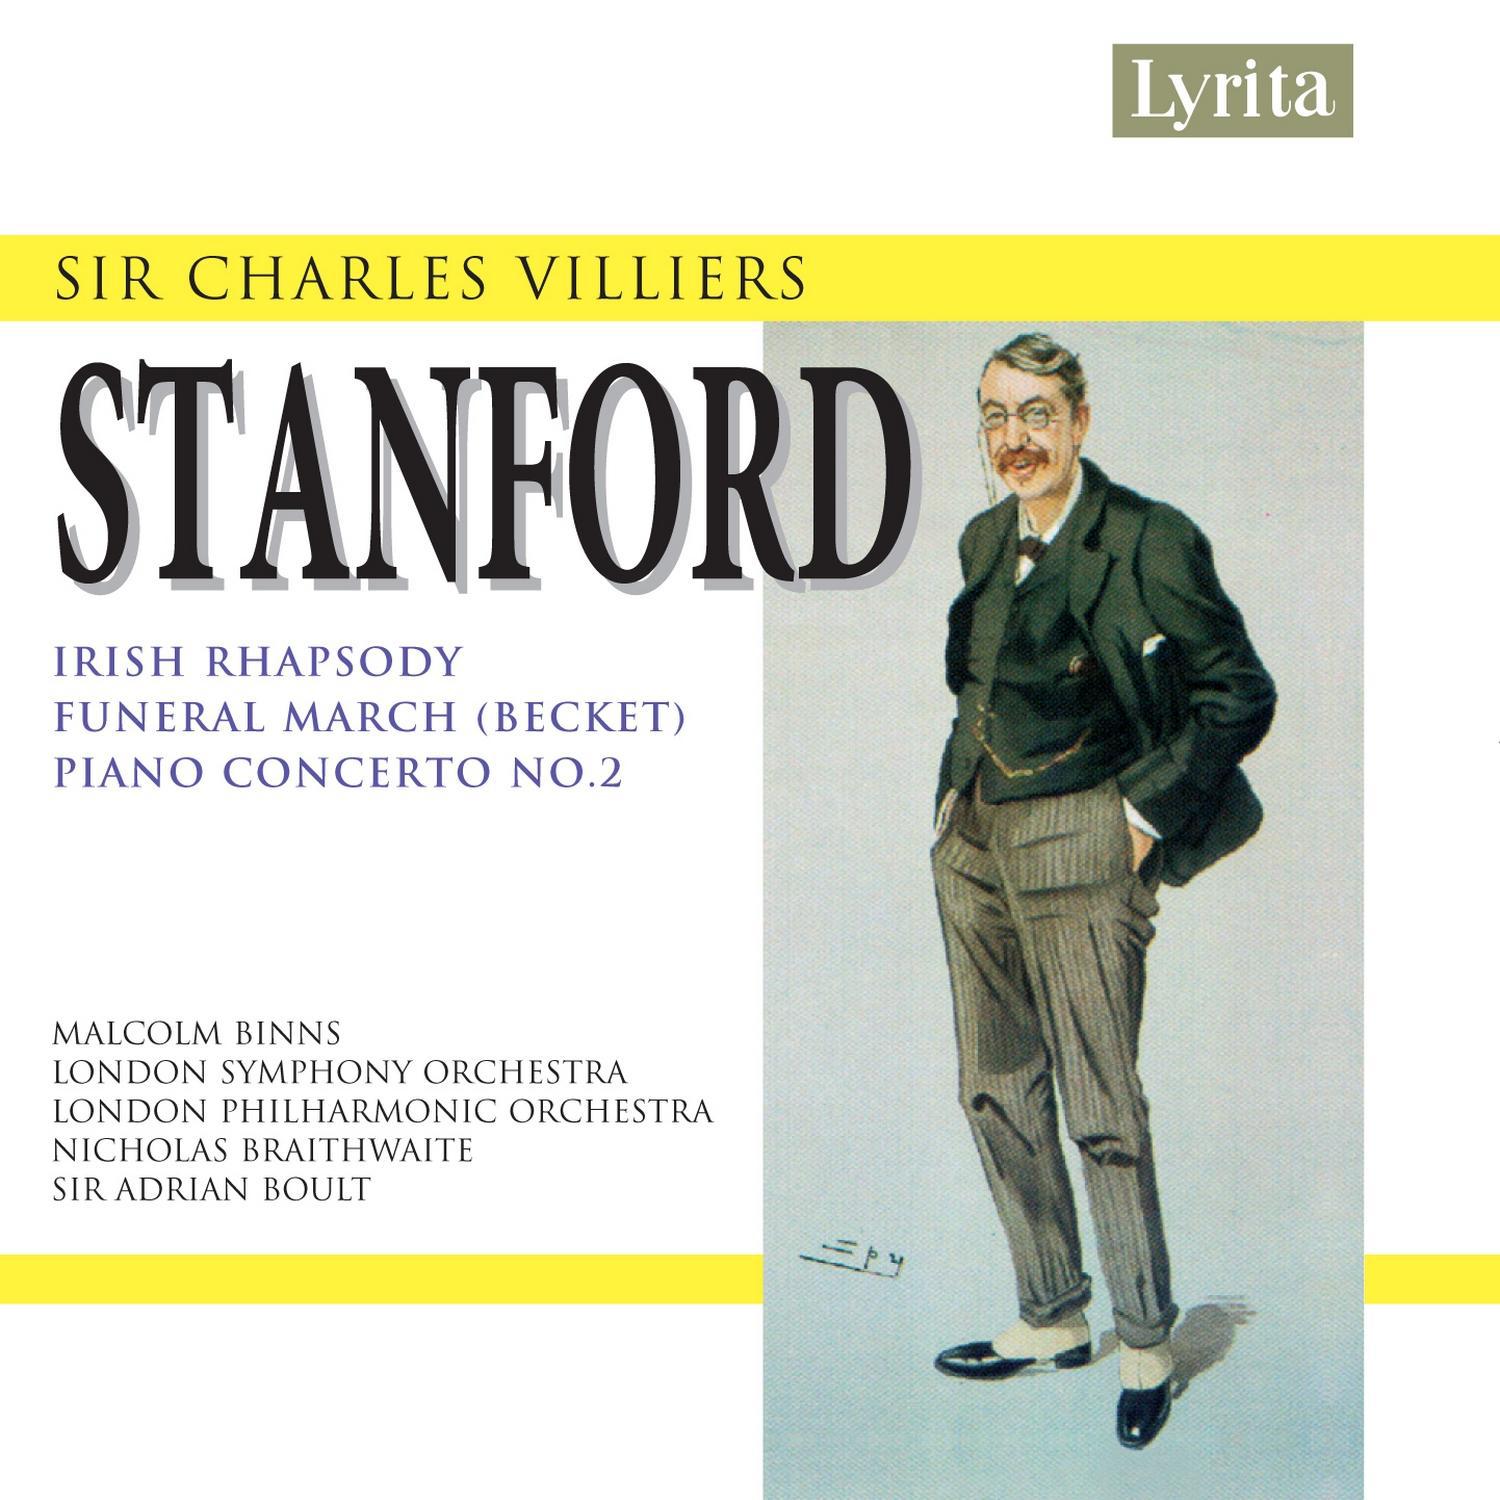 Stanford: Piano Concerto No. 2